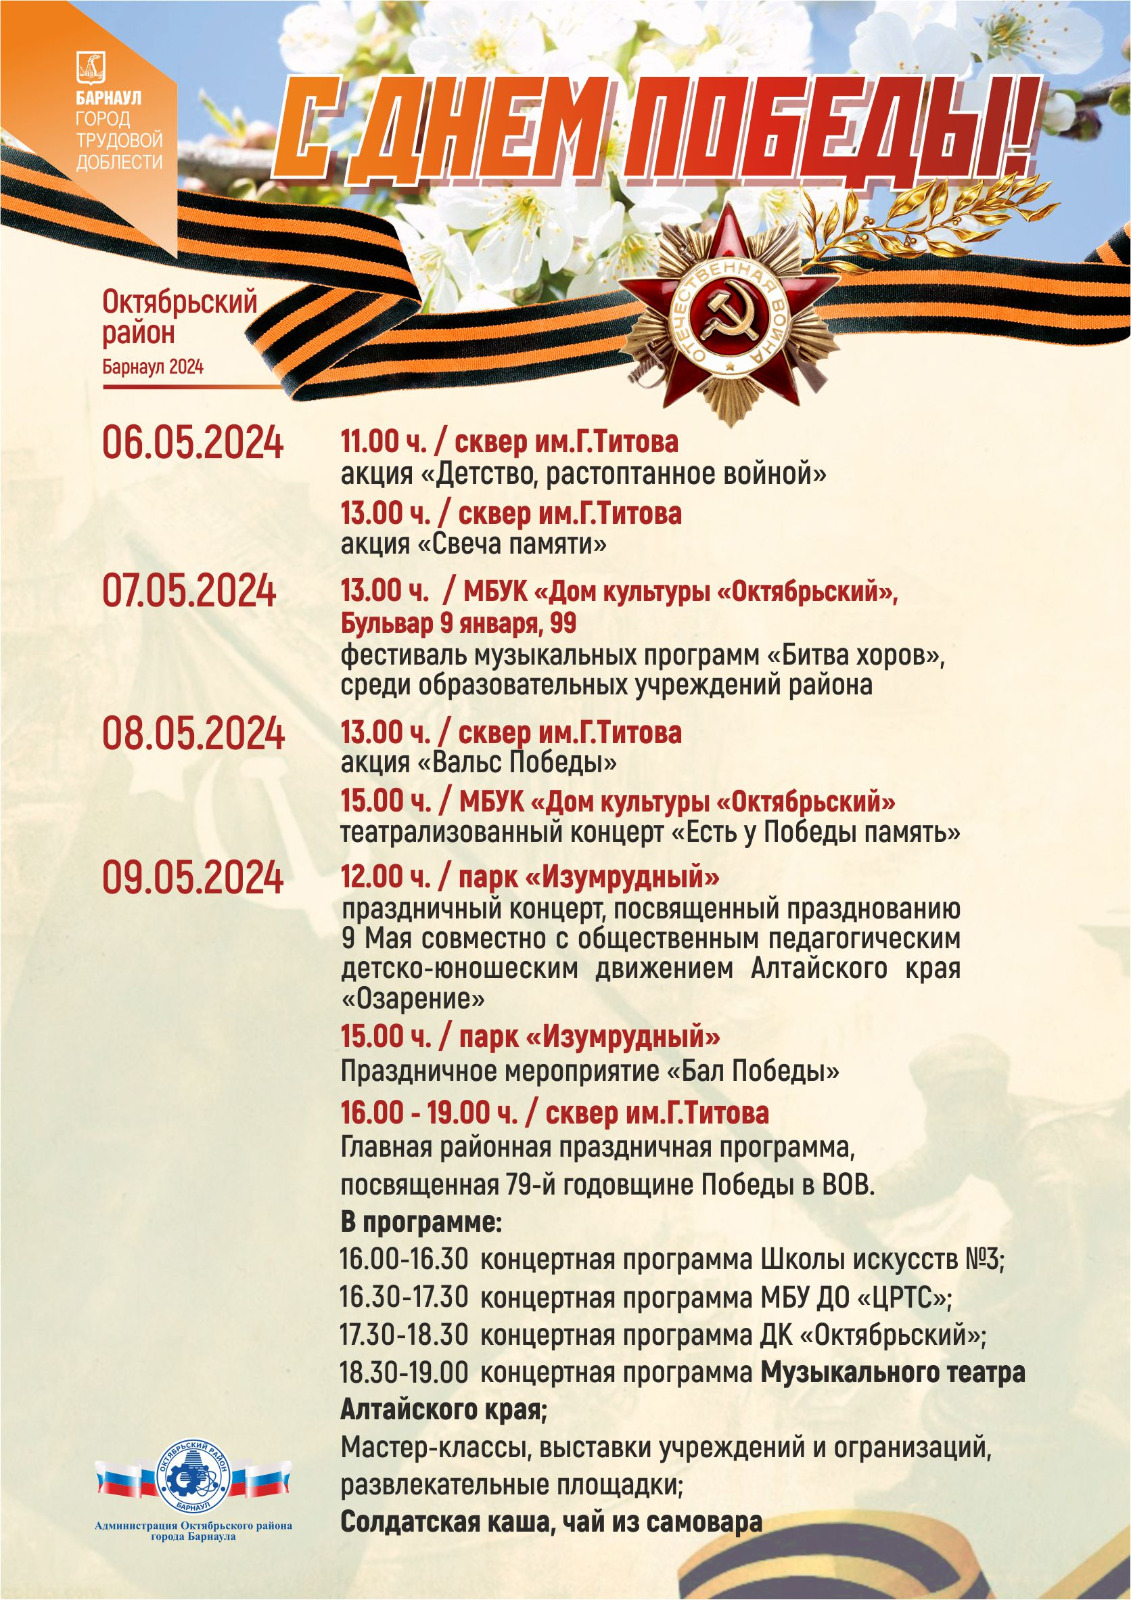 Какие мероприятия, посвященные празднованию Дня Победы, пройдут на территории Октябрьского района Барнаула